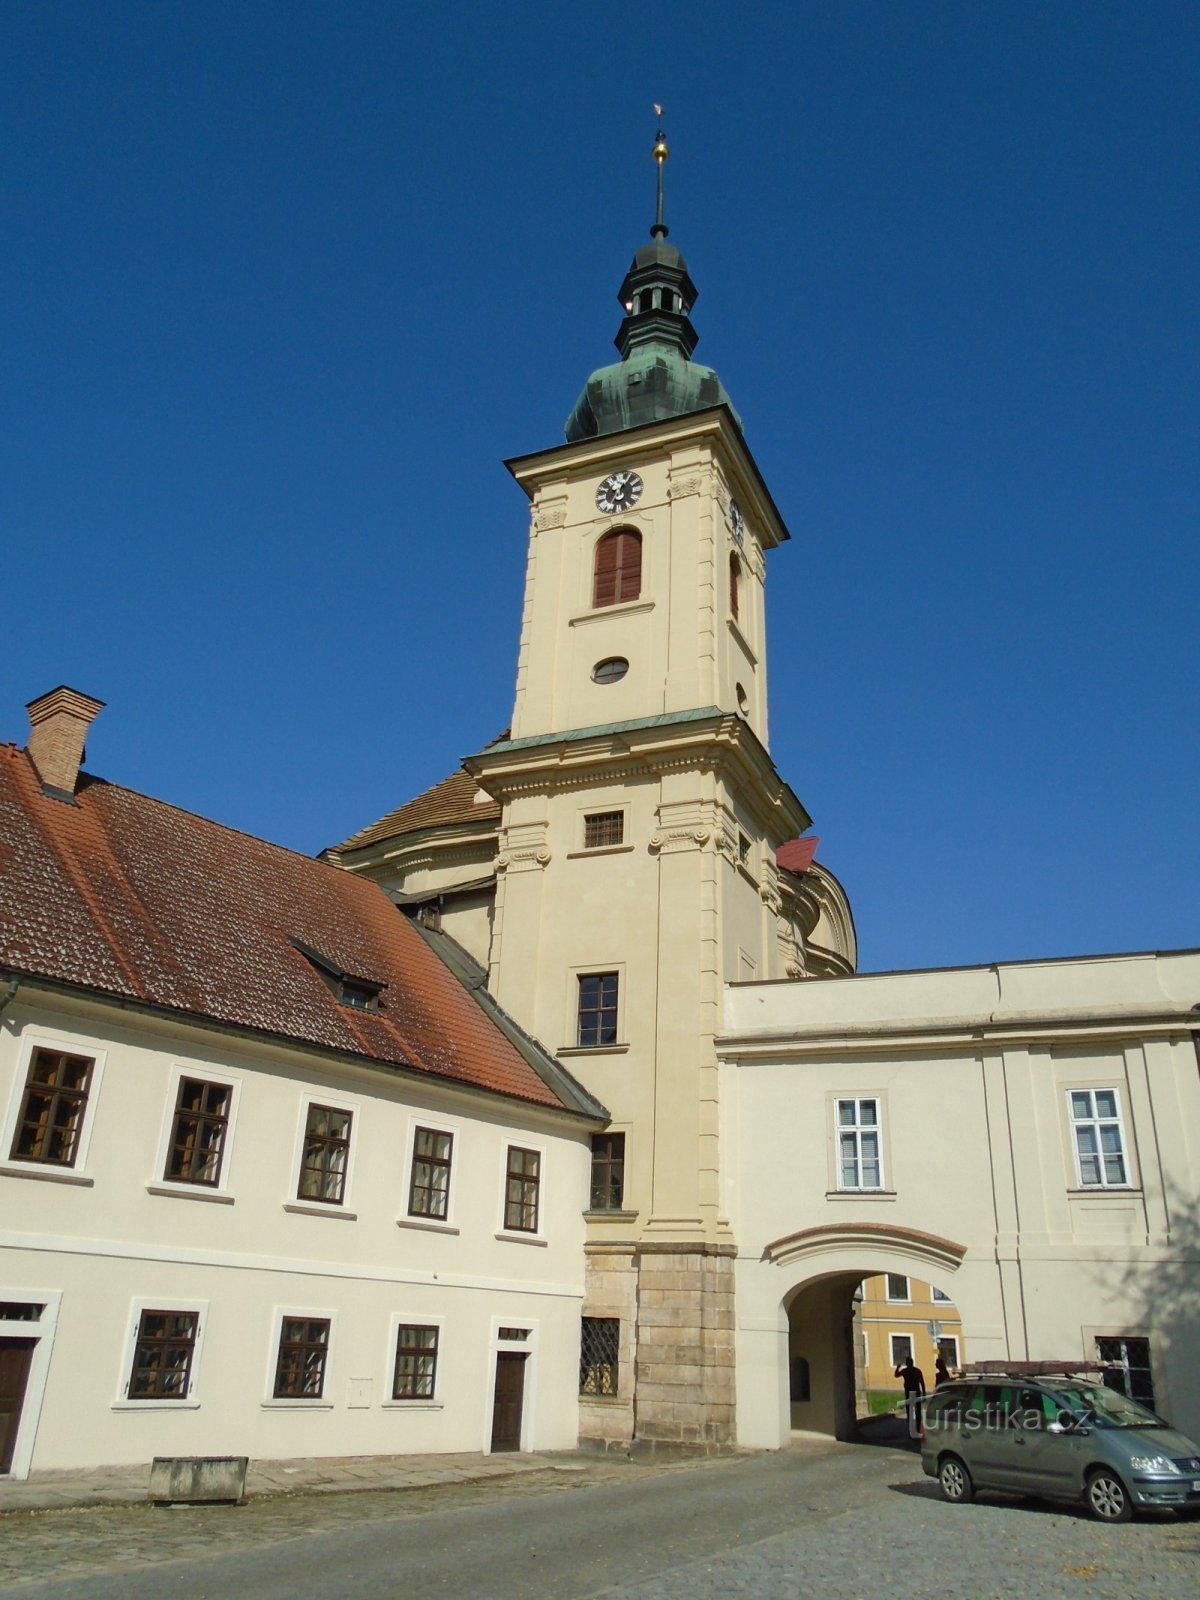 Loppiaisen linnakirkko (Smiřice, 28.9.2017. kesäkuuta XNUMX)